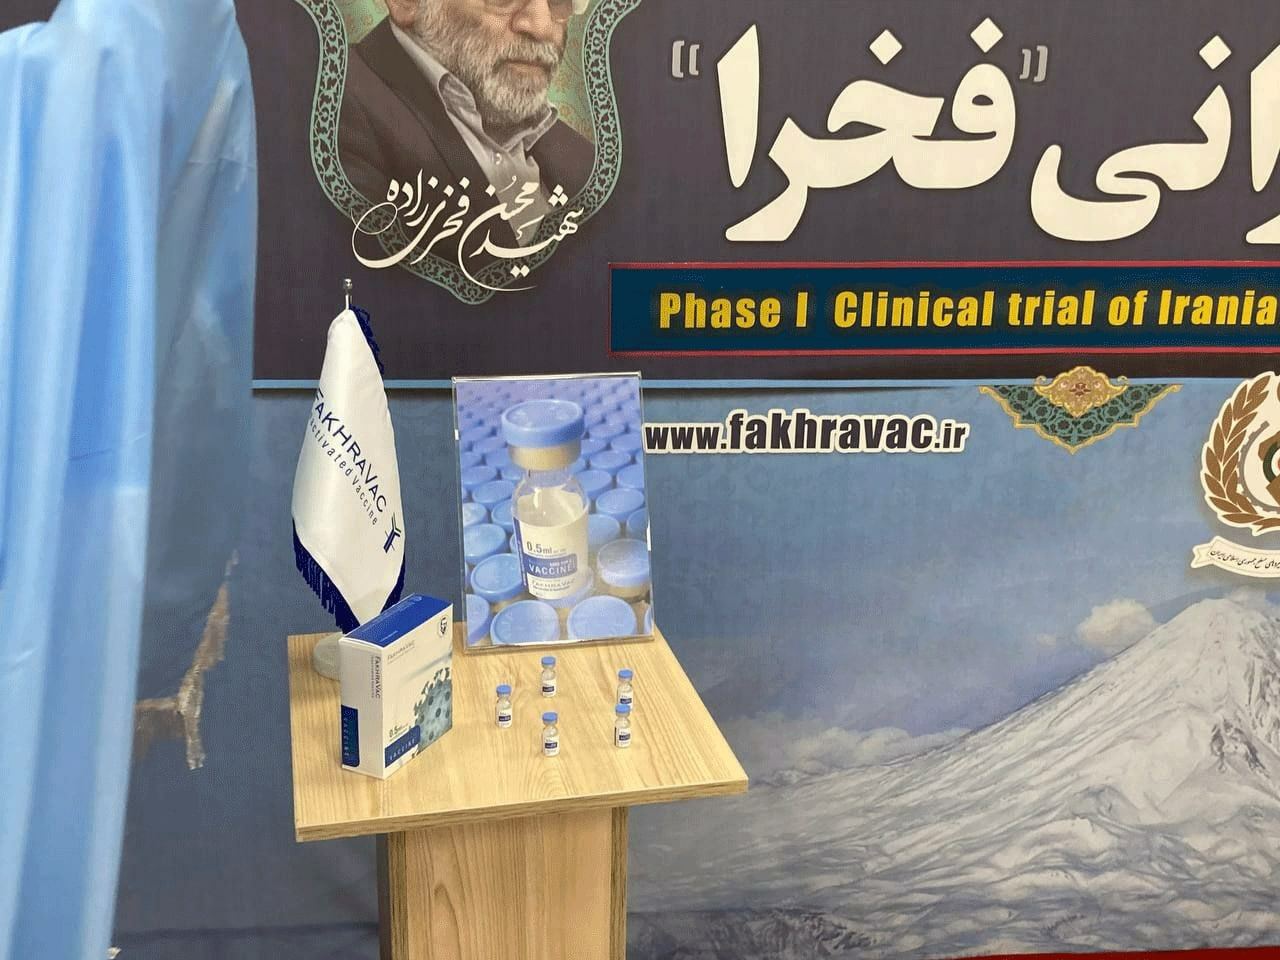 Another coronavirus vaccine presented in Iran